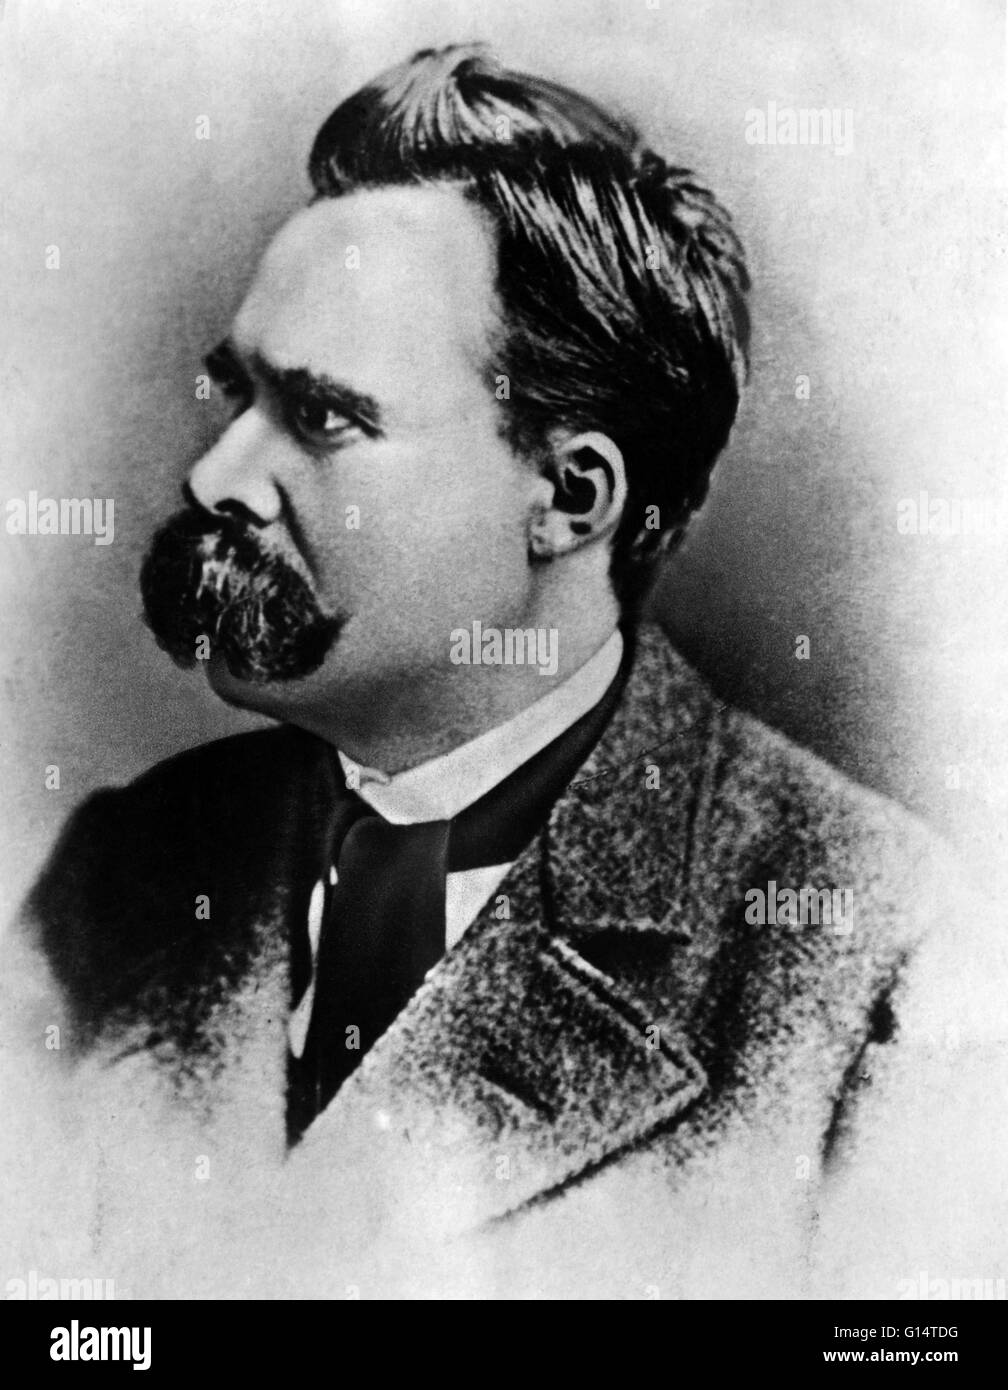 Friedrich Wilhelm Nietzsche (15. Oktober 1844 - 25. August 1900) war ein deutscher Philosoph, Dichter, Komponist und klassischer Philologe. Er schrieb kritische Texte über Religion, Moral, Kultur, Philosophie und Wissenschaft. Nietzsches Einfluss auf Stockfoto